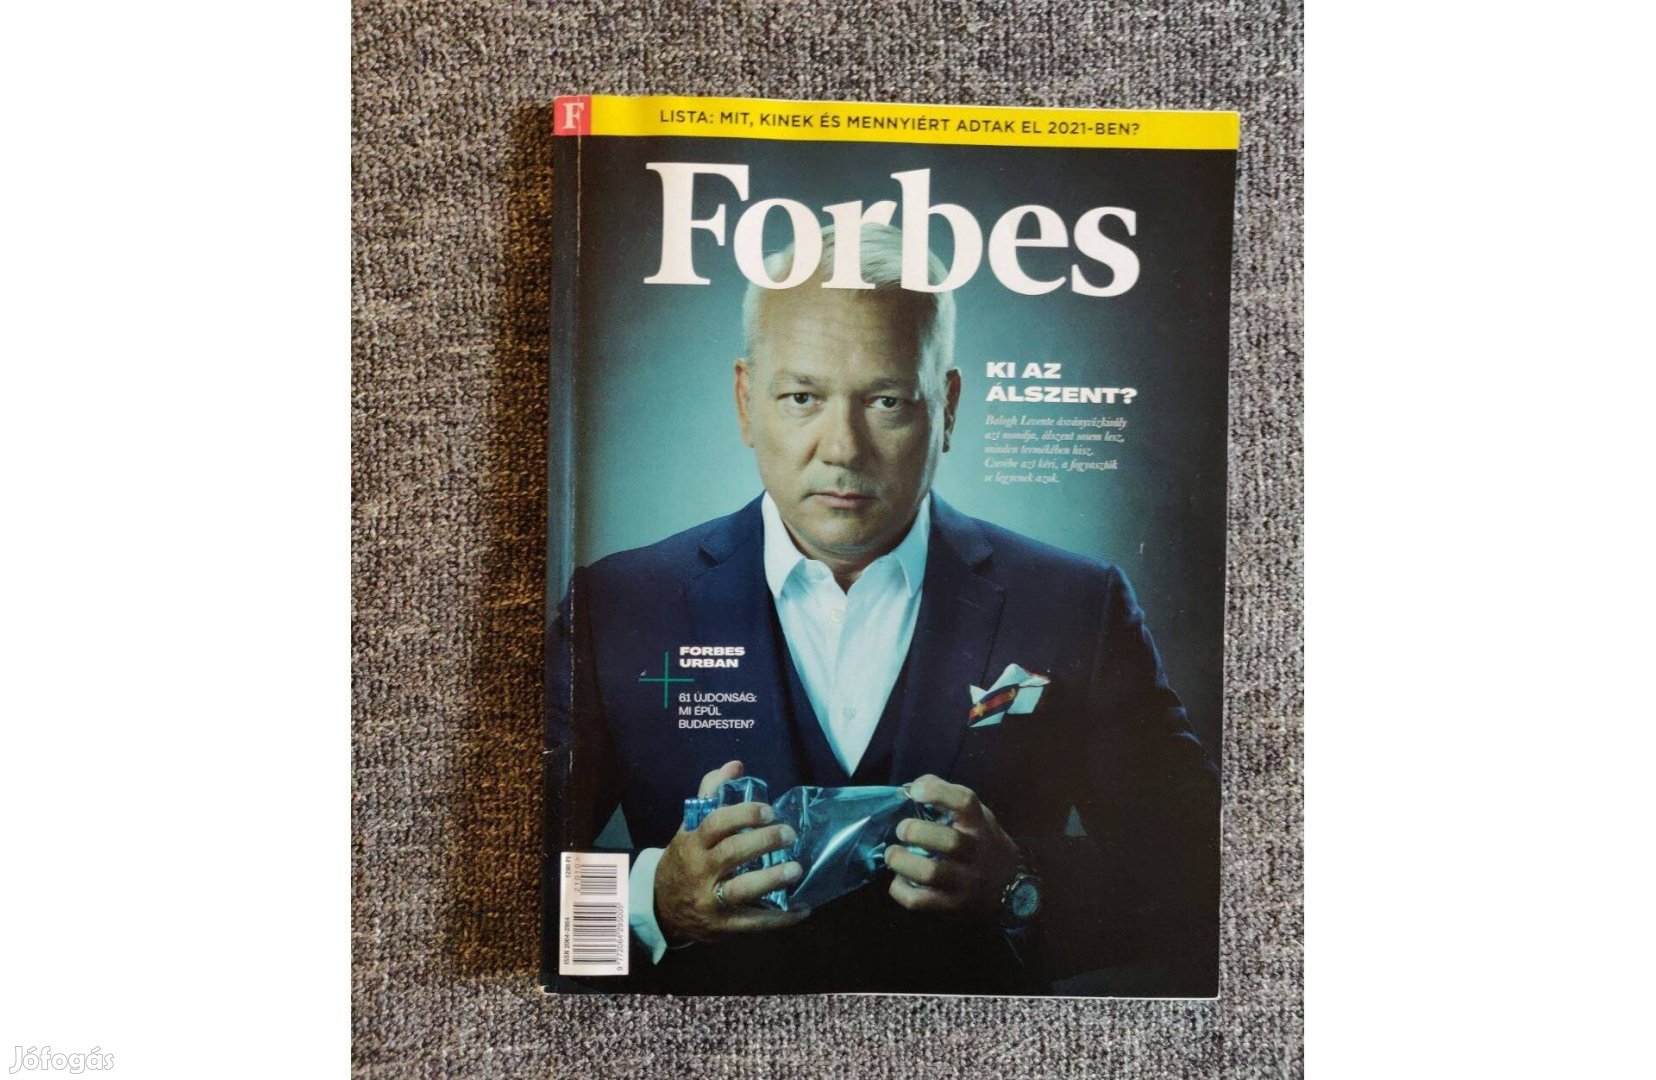 9 db Forbes magazin - az ár együtt az összesre vonatkozik